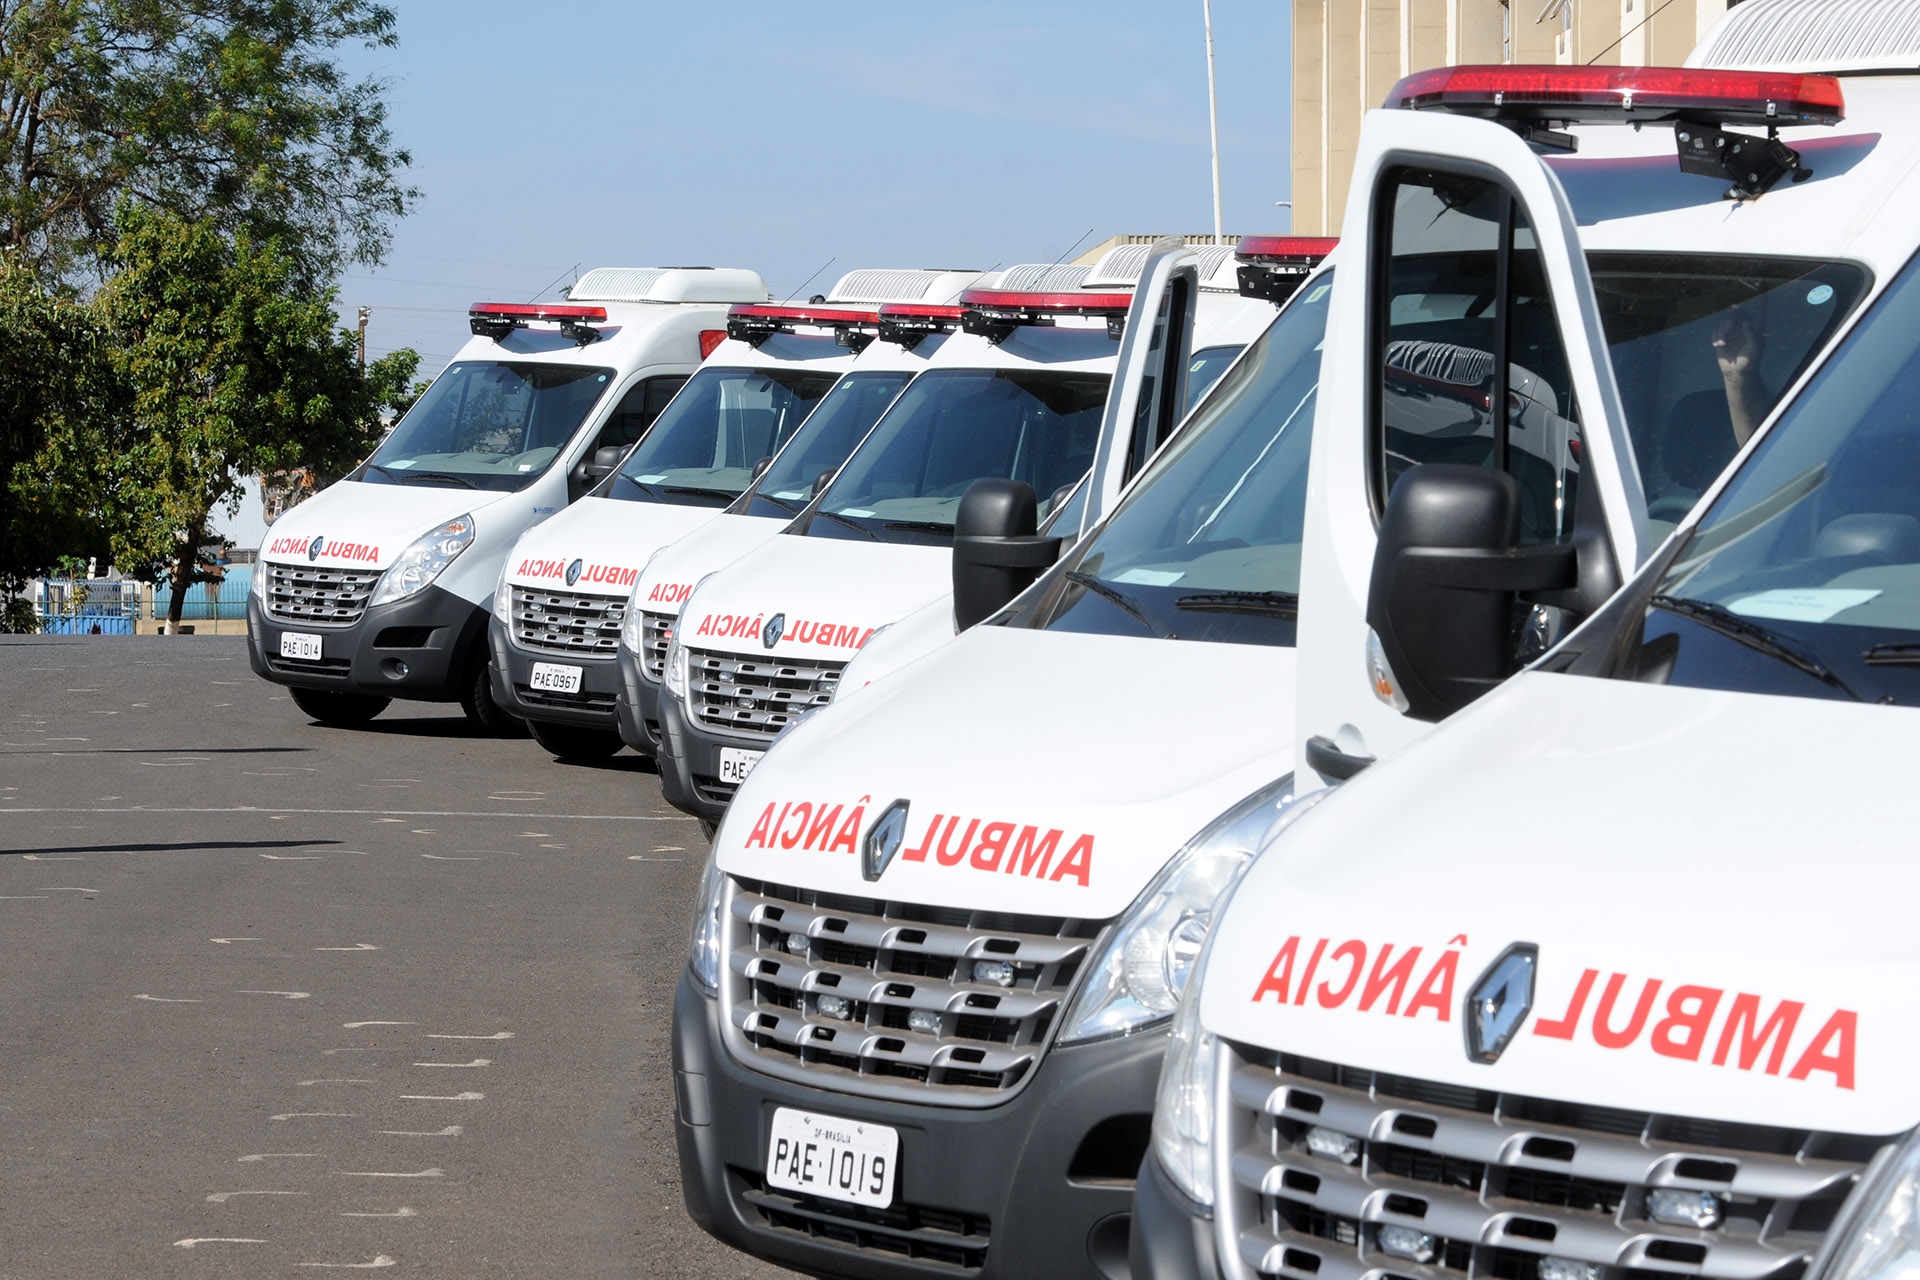 A Secretaria de Saúde do Distrito Federal recebeu, na manhã deste sábado (3), 30 ambulâncias